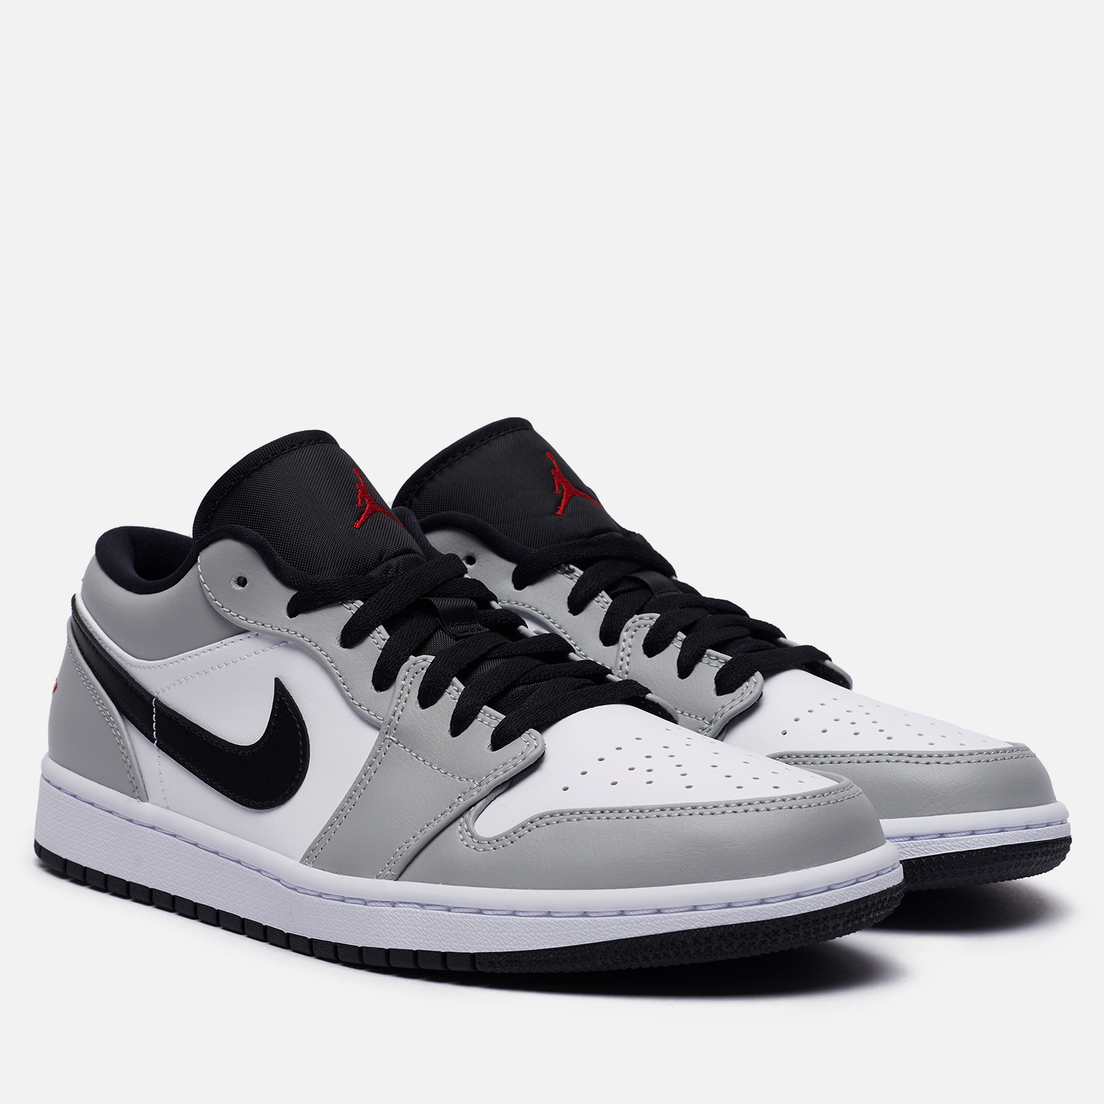 Jordan 1 low оригинал. Nike Air Jordan 1 Low Grey White Black. Nike Air Jordan 1 Low Smoke Grey. Nike Air Jordan 1 Low Grey. Nike Air Jordan 1 Low.